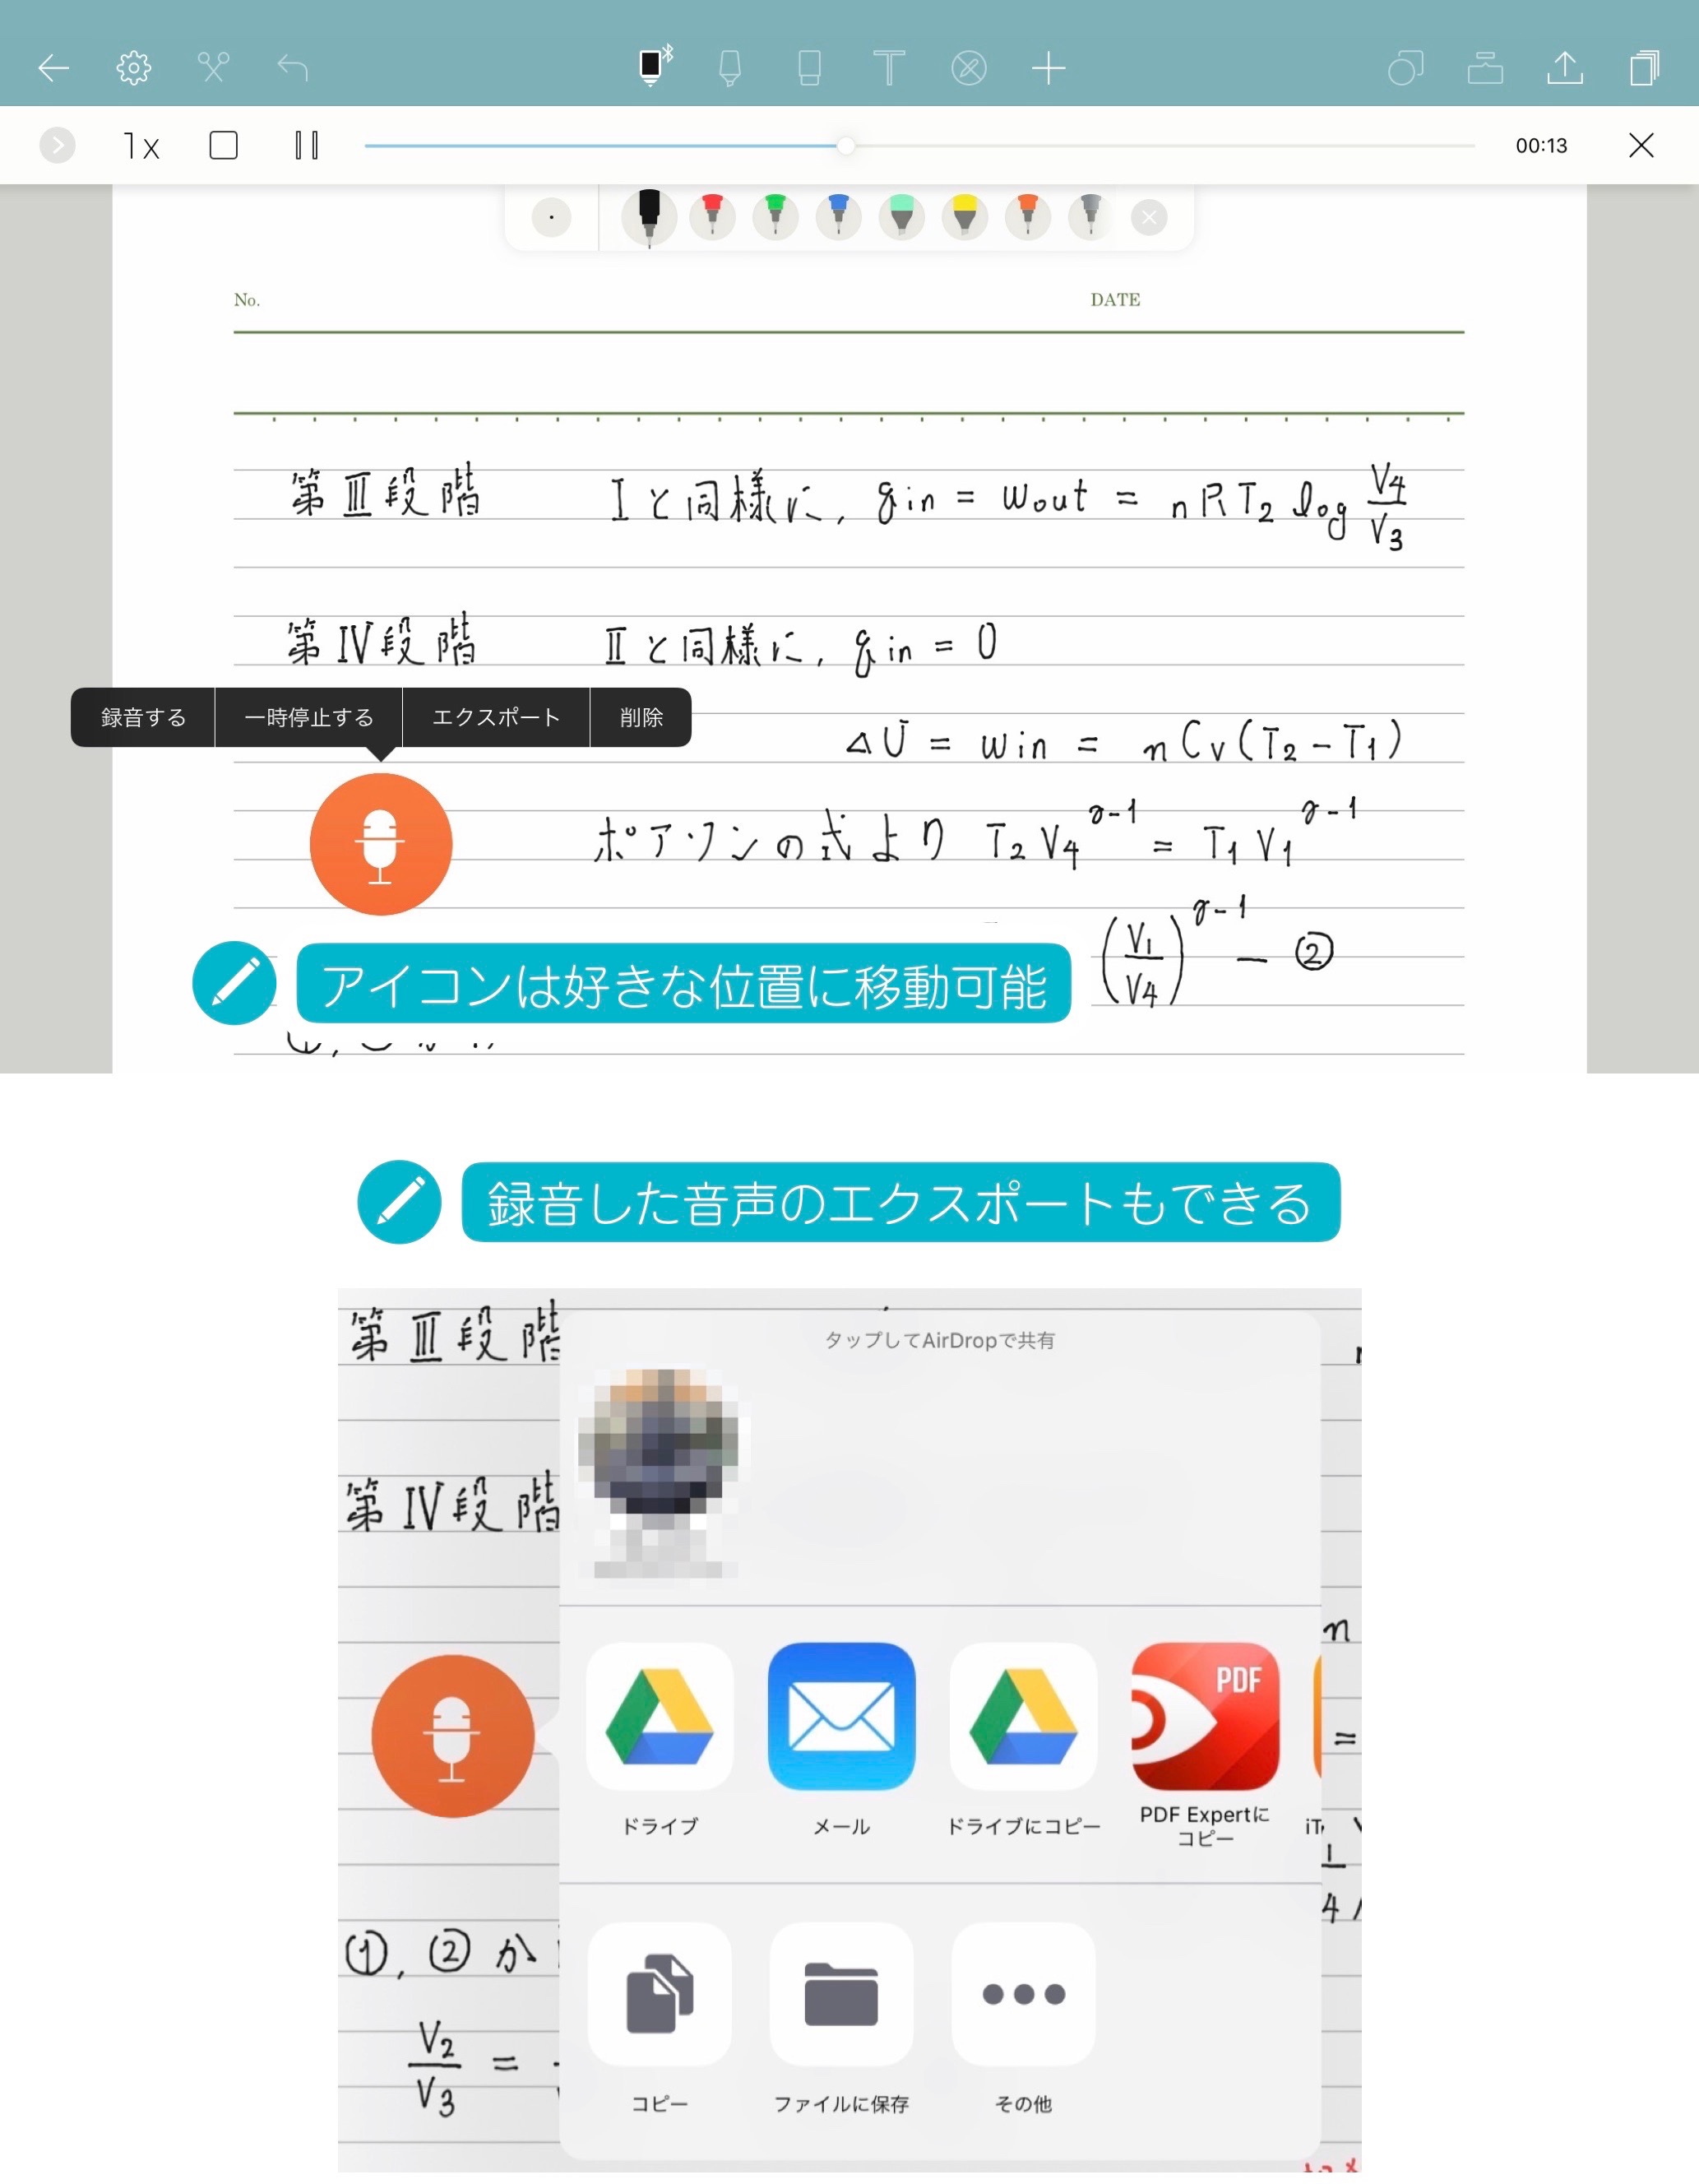 iPad手書きノートアプリの定番「Noteshelf 2」と「GoodNotes 5」の共通点・違いを比較